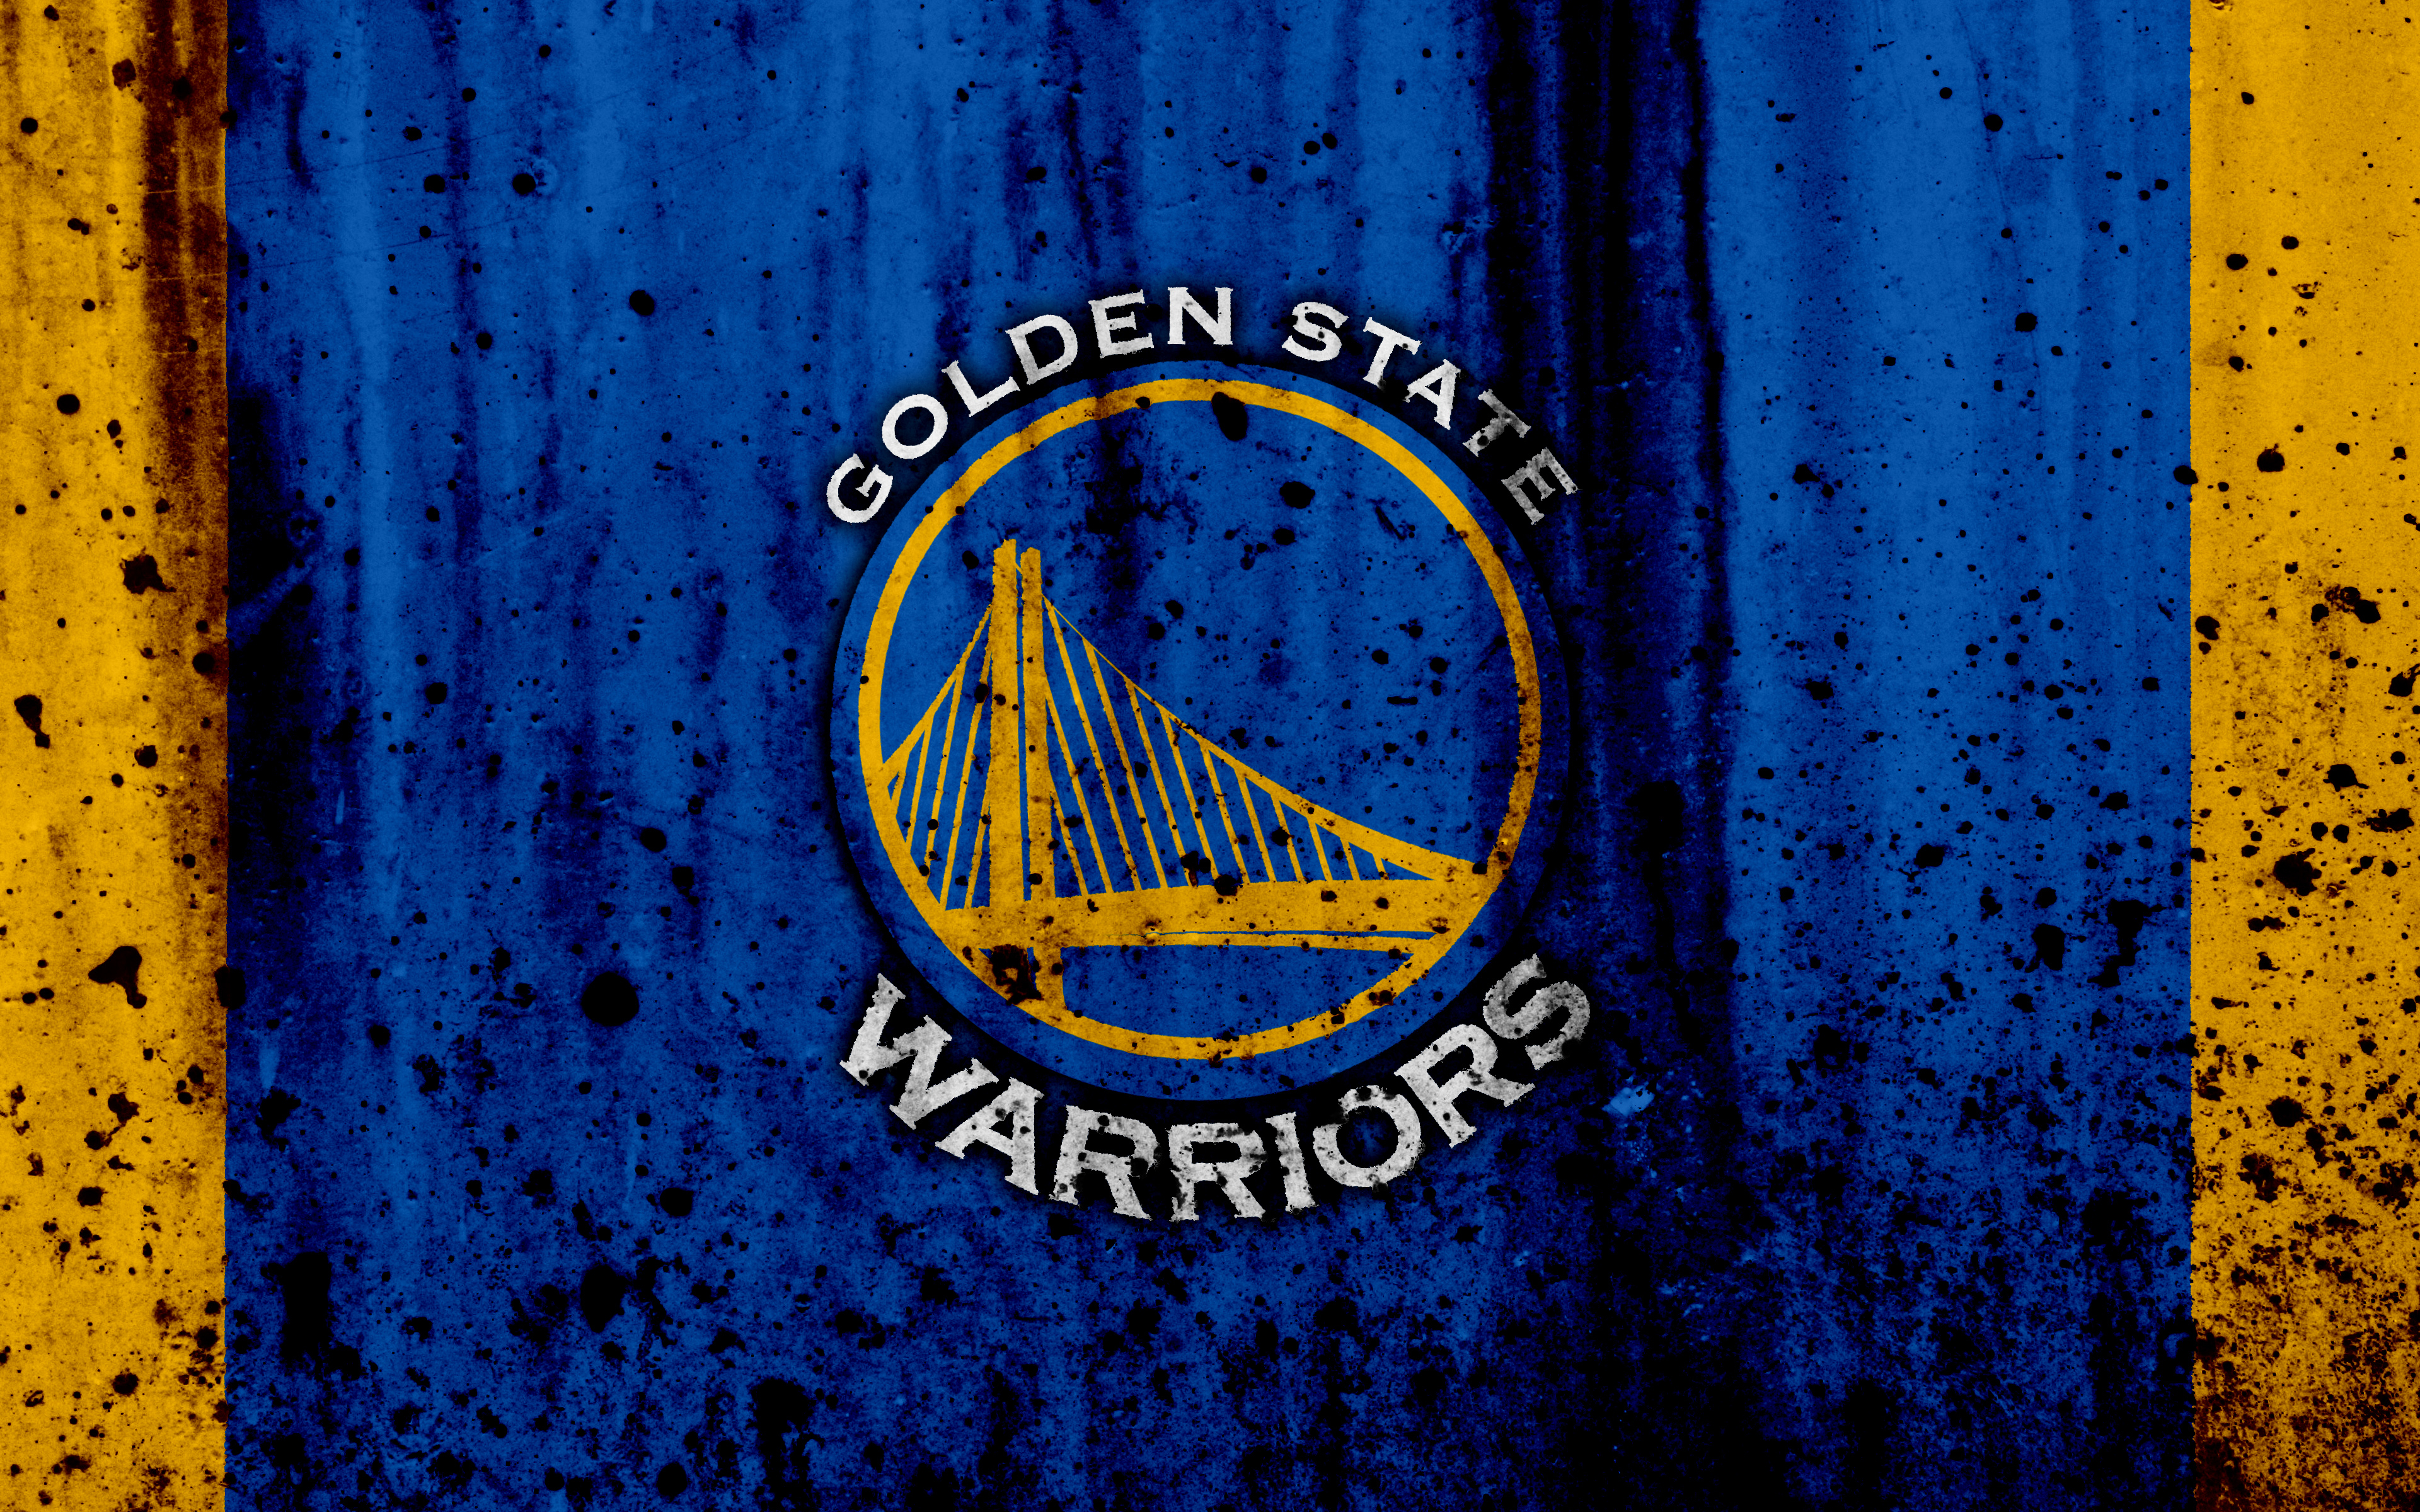 golden state warriors wallpaper,blue,motor vehicle,yellow,emblem,logo